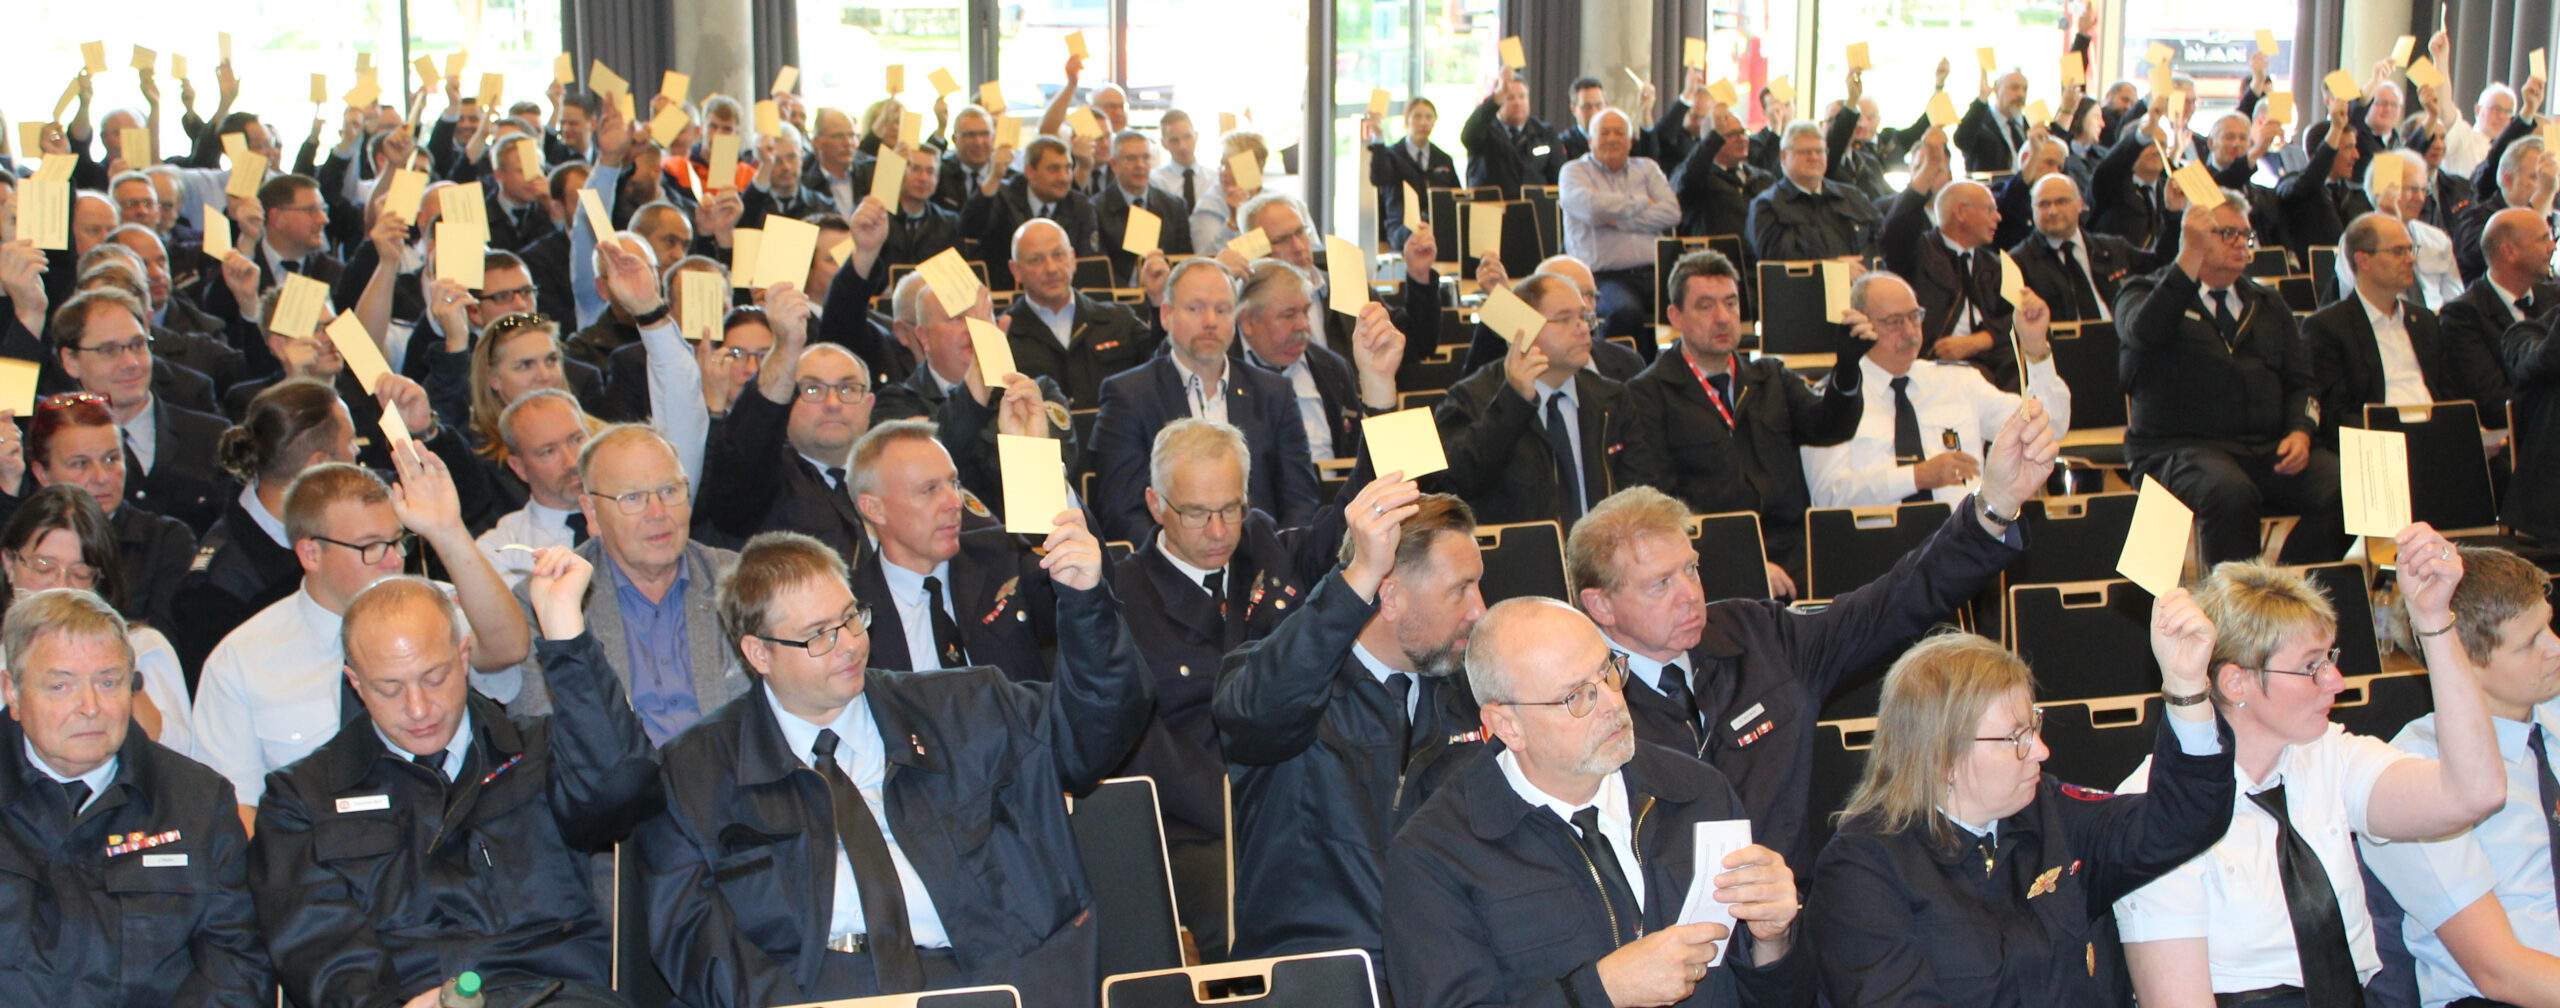 Eine Vielzahl von Delegierten erhob in der Verbandsversammlung des Kreisfeuerwehrverbandes in Bad Soden ihre Stimmkarten.